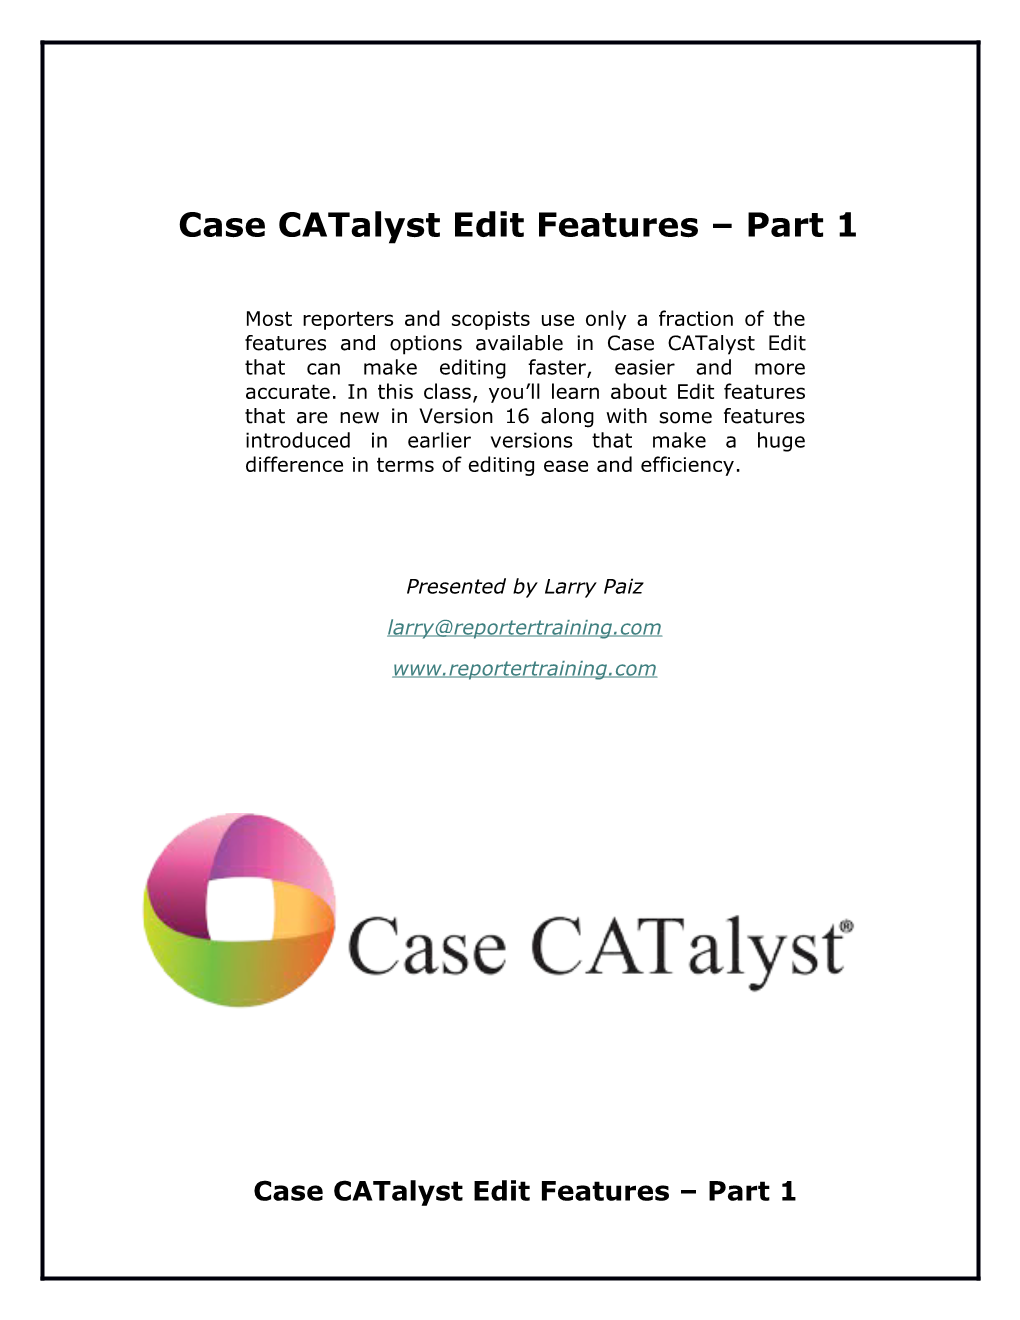 Case Catalyst Edit Features Part 1